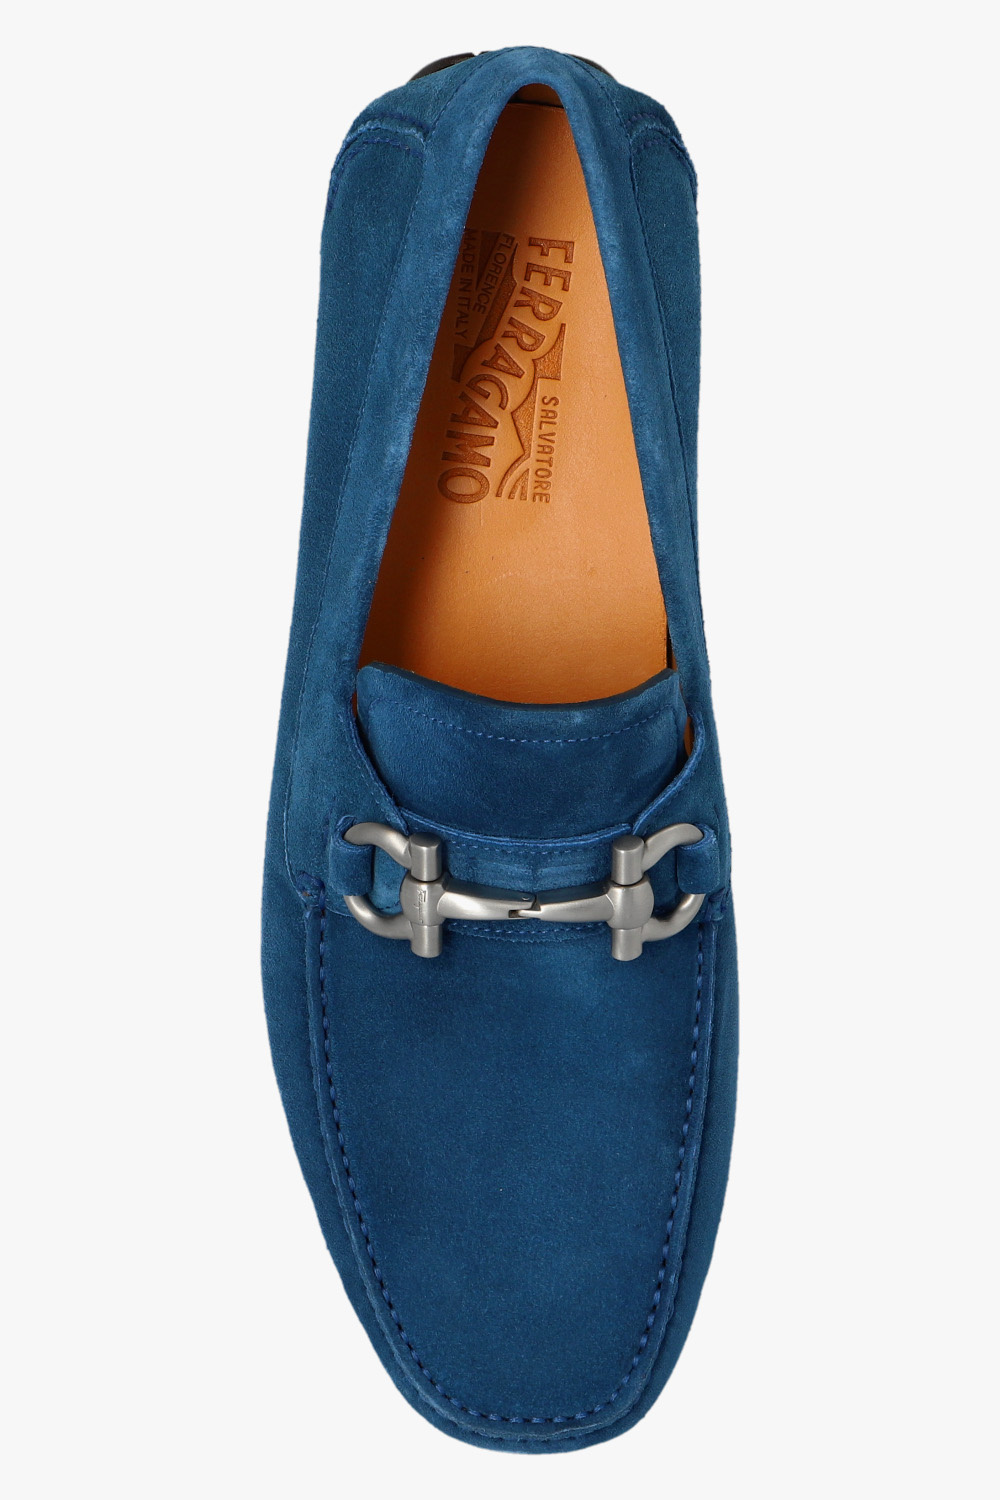 FERRAGAMO ‘Parigi’ leather tal shoes